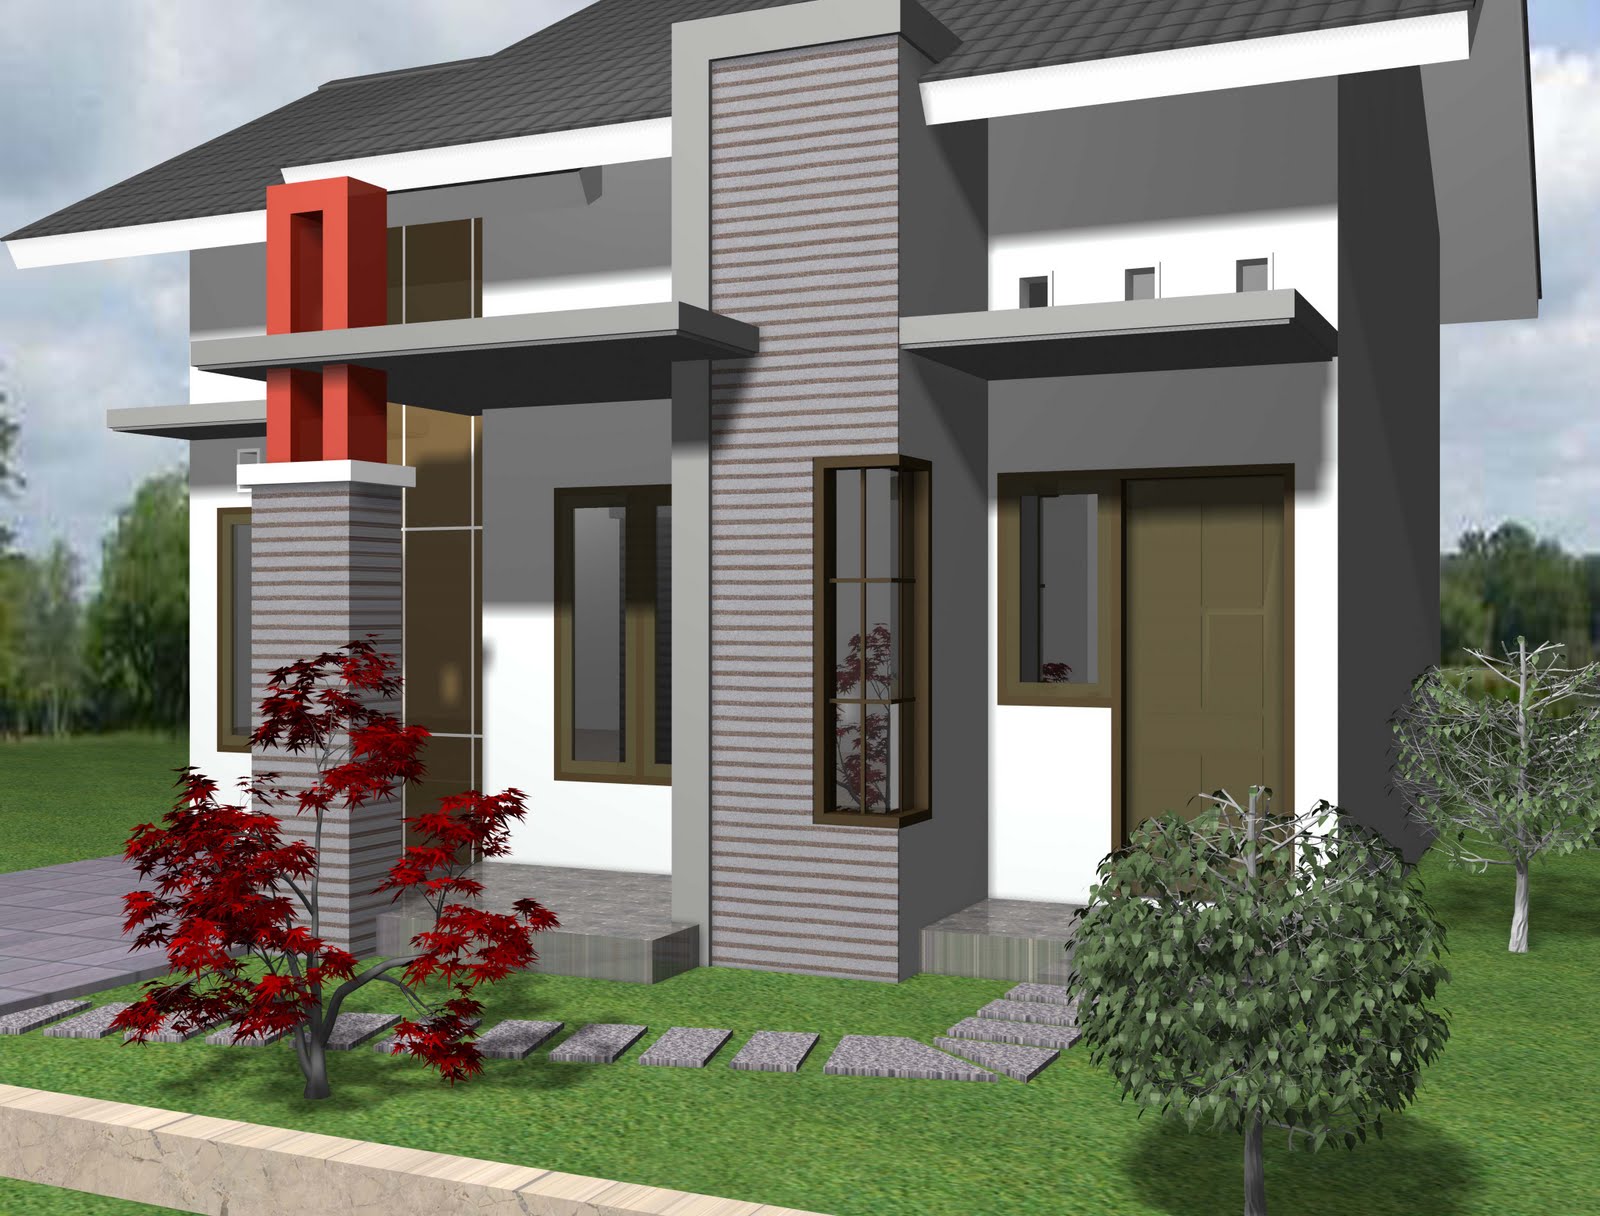 Desain Rumah Sederhana 1 Lantai - Model Rumah Minimalis Desain Terbaru ...